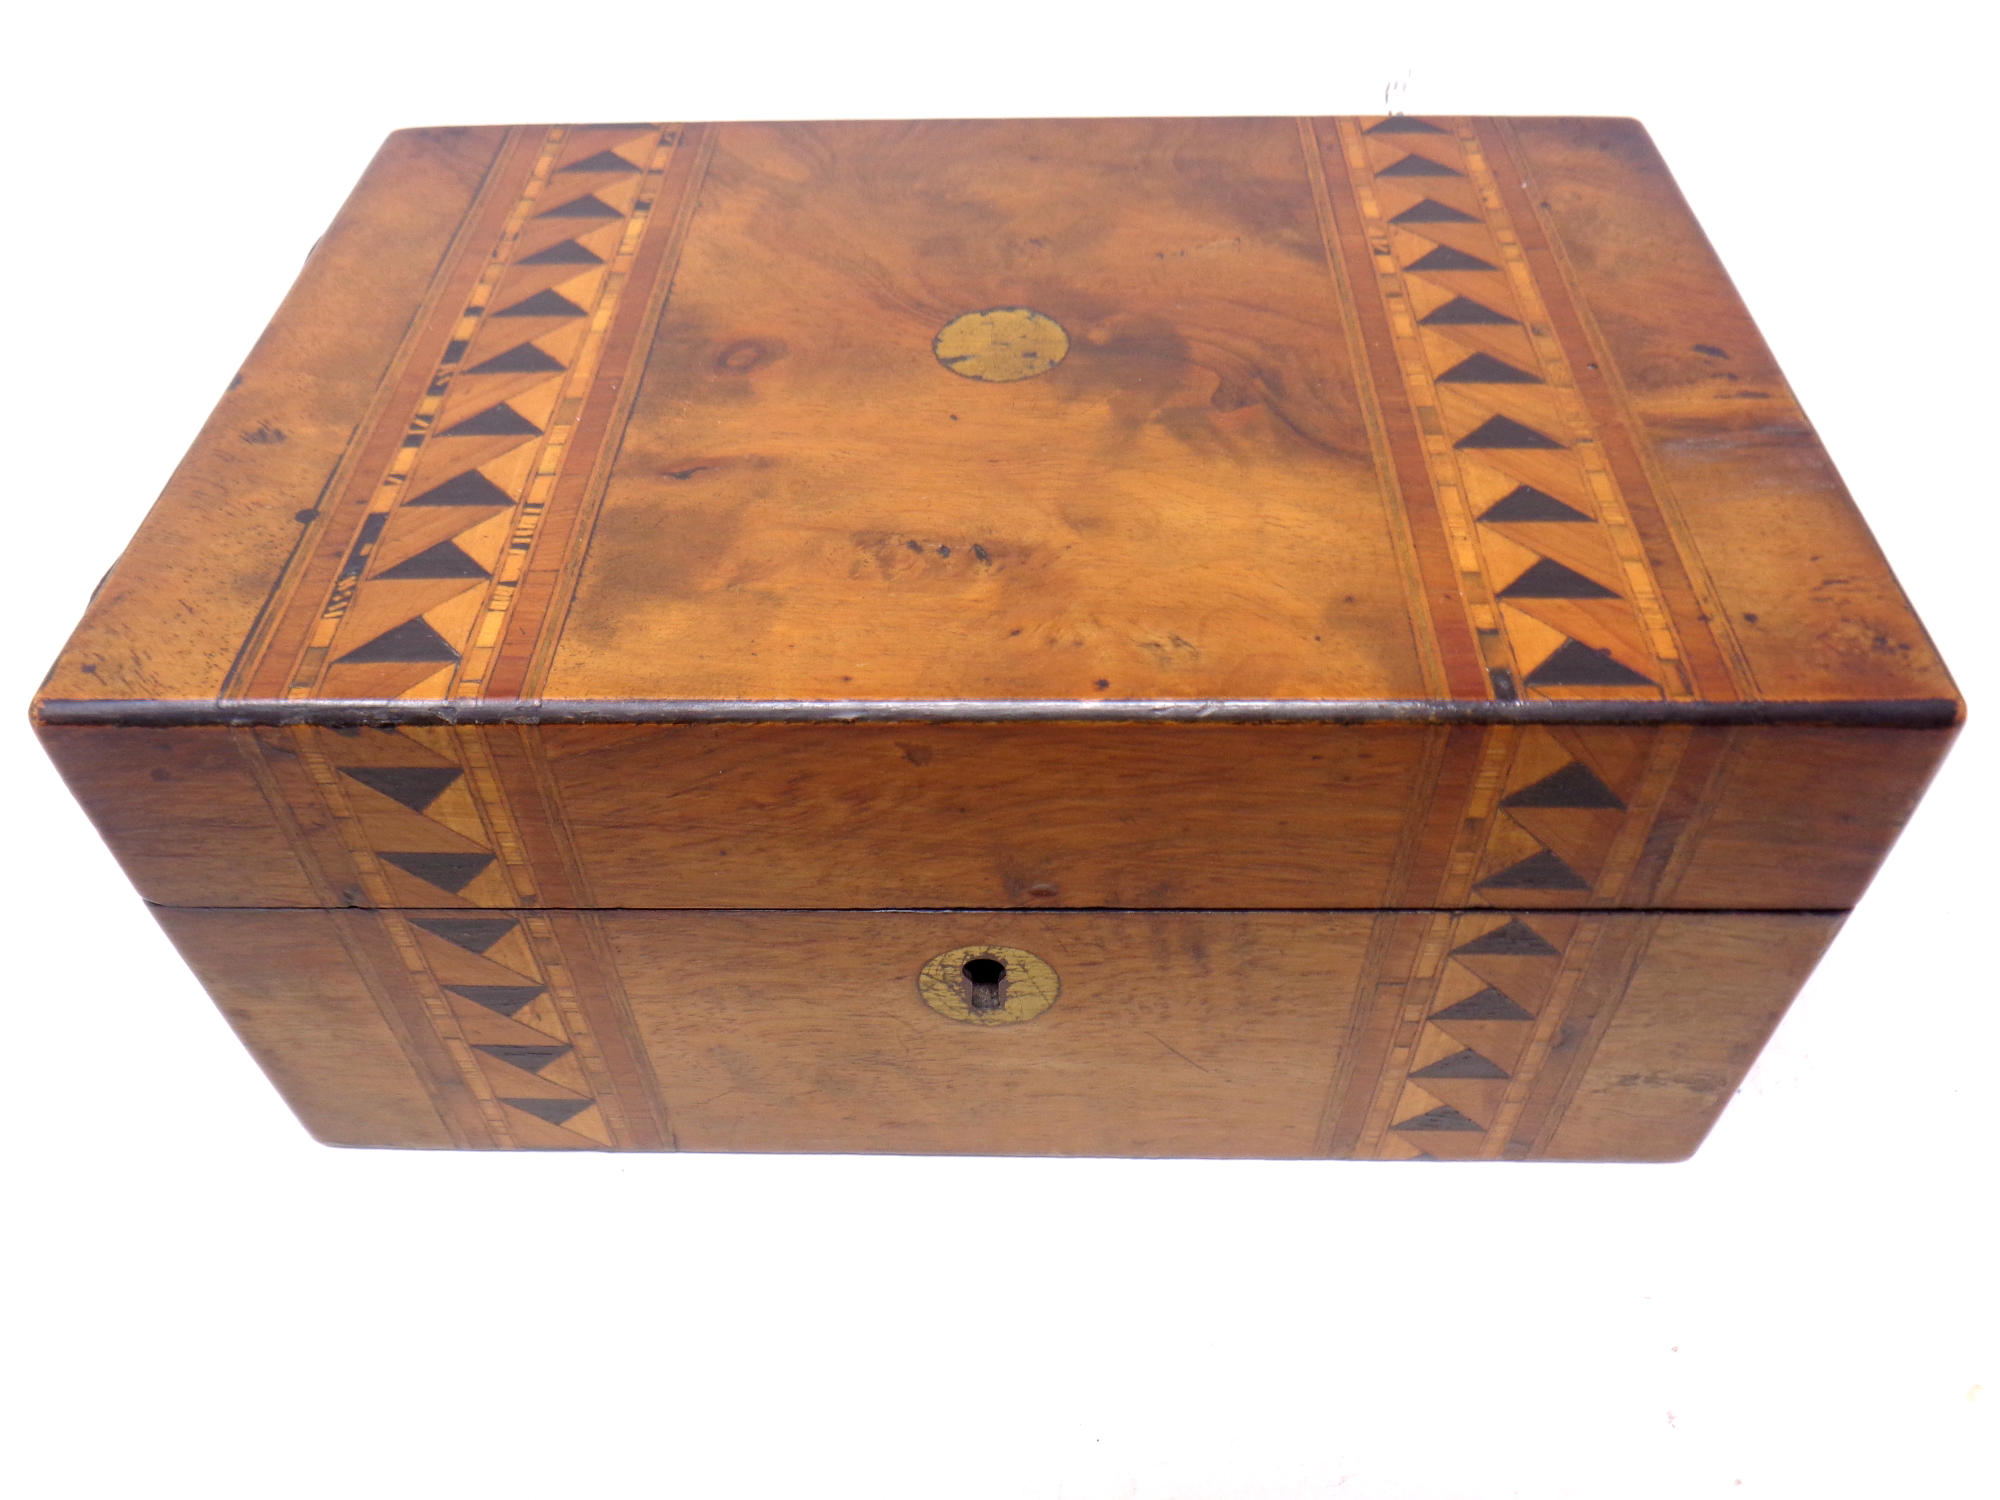 A 19th century inlaid walnut sewing box